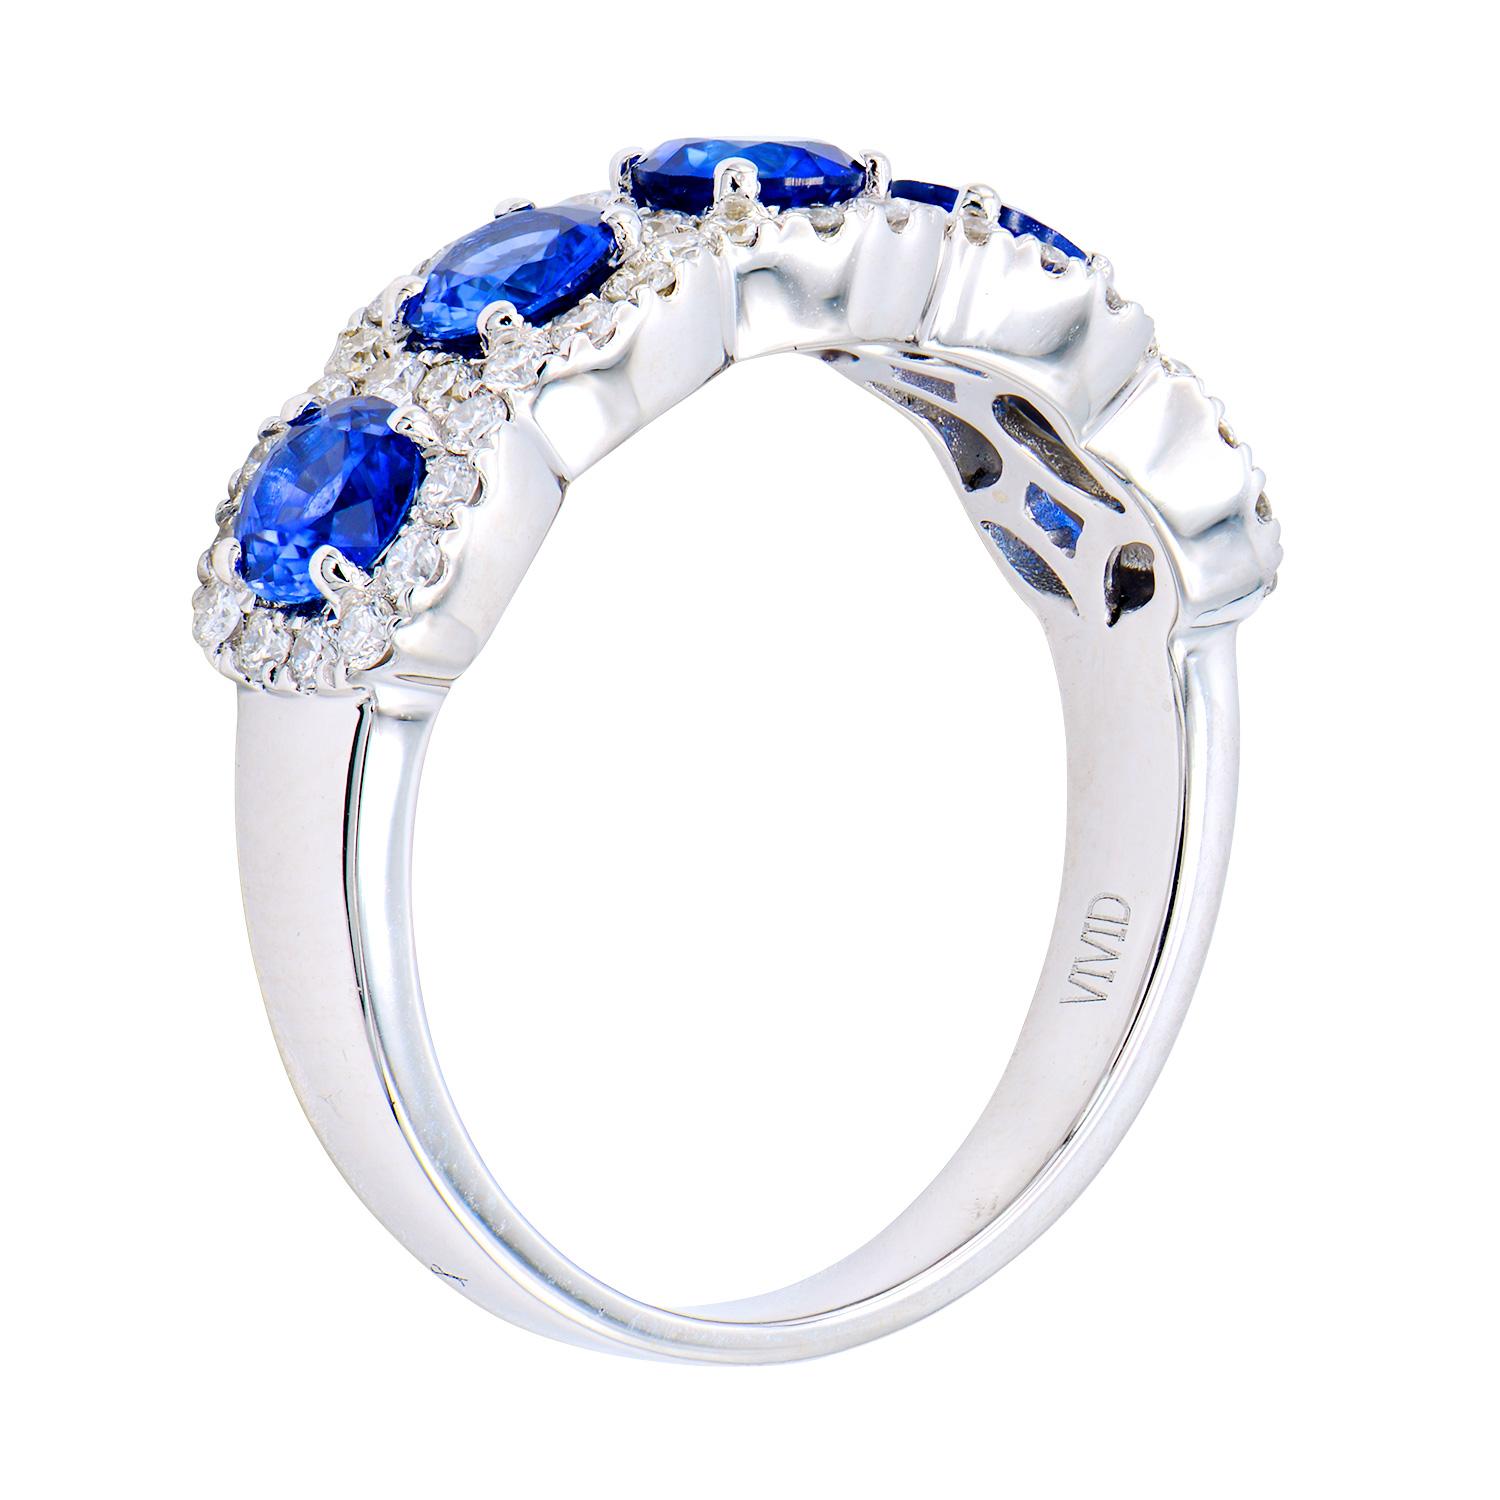 Dieses Saphir- und Diamantband hat 5 königsblaue Saphire von insgesamt 1,58 Karat. Jeder Saphir ist von Diamanten der Farbe VS2, G von insgesamt 0,43 Karat umgeben, die von 52 runden Diamanten gebildet werden. Diese wunderschönen Steine sind in 4,0